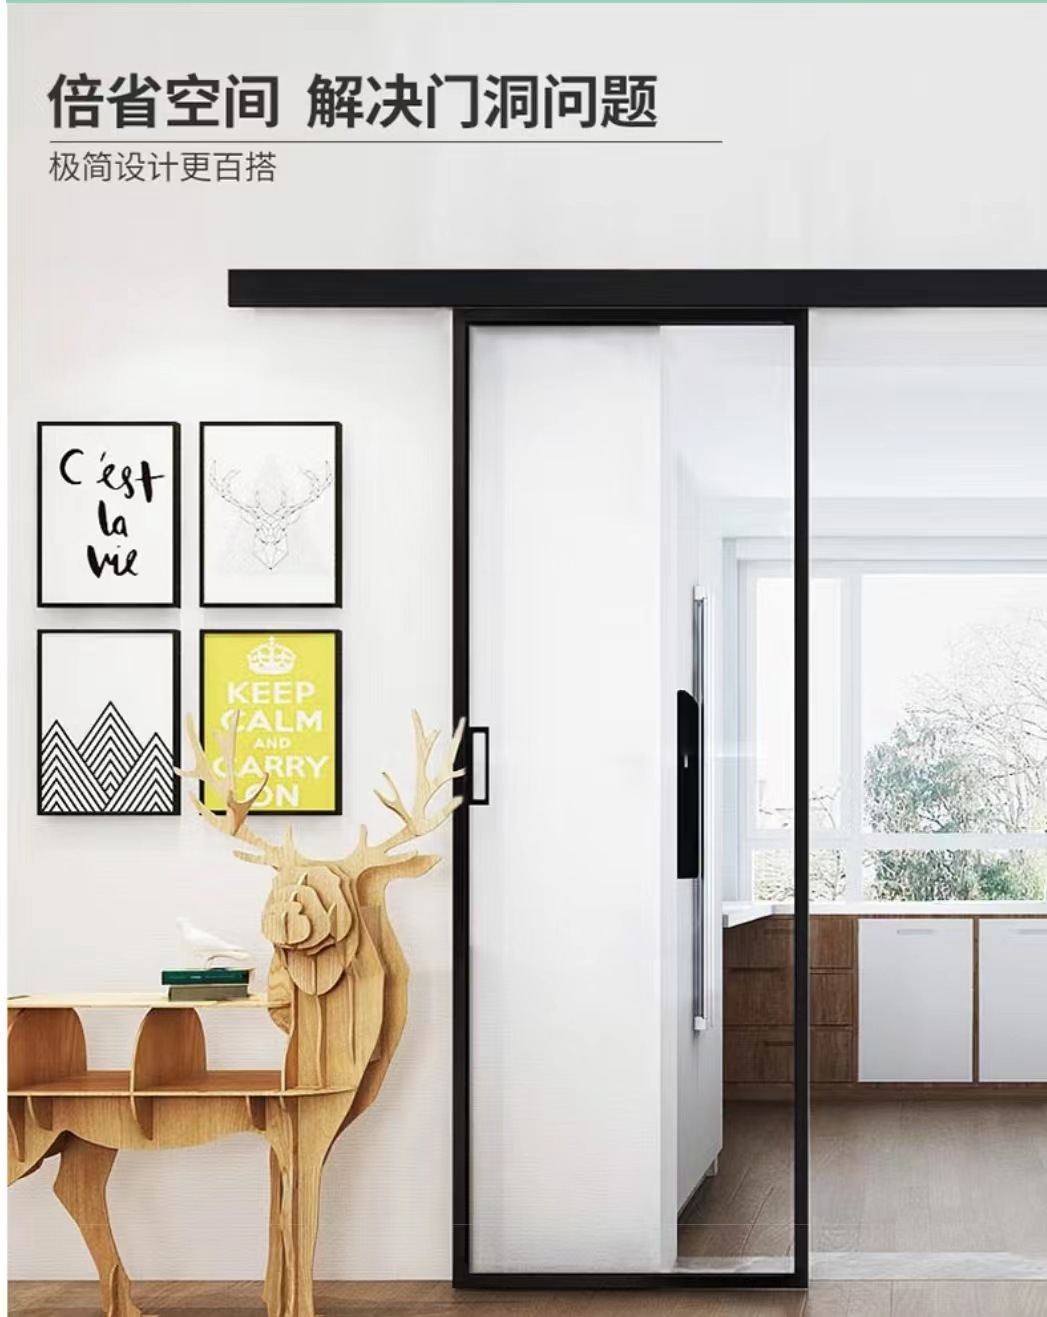 戴伦室内设计 - 香港典型小户型现代简约风格经典作品_太平洋家居网整屋案例